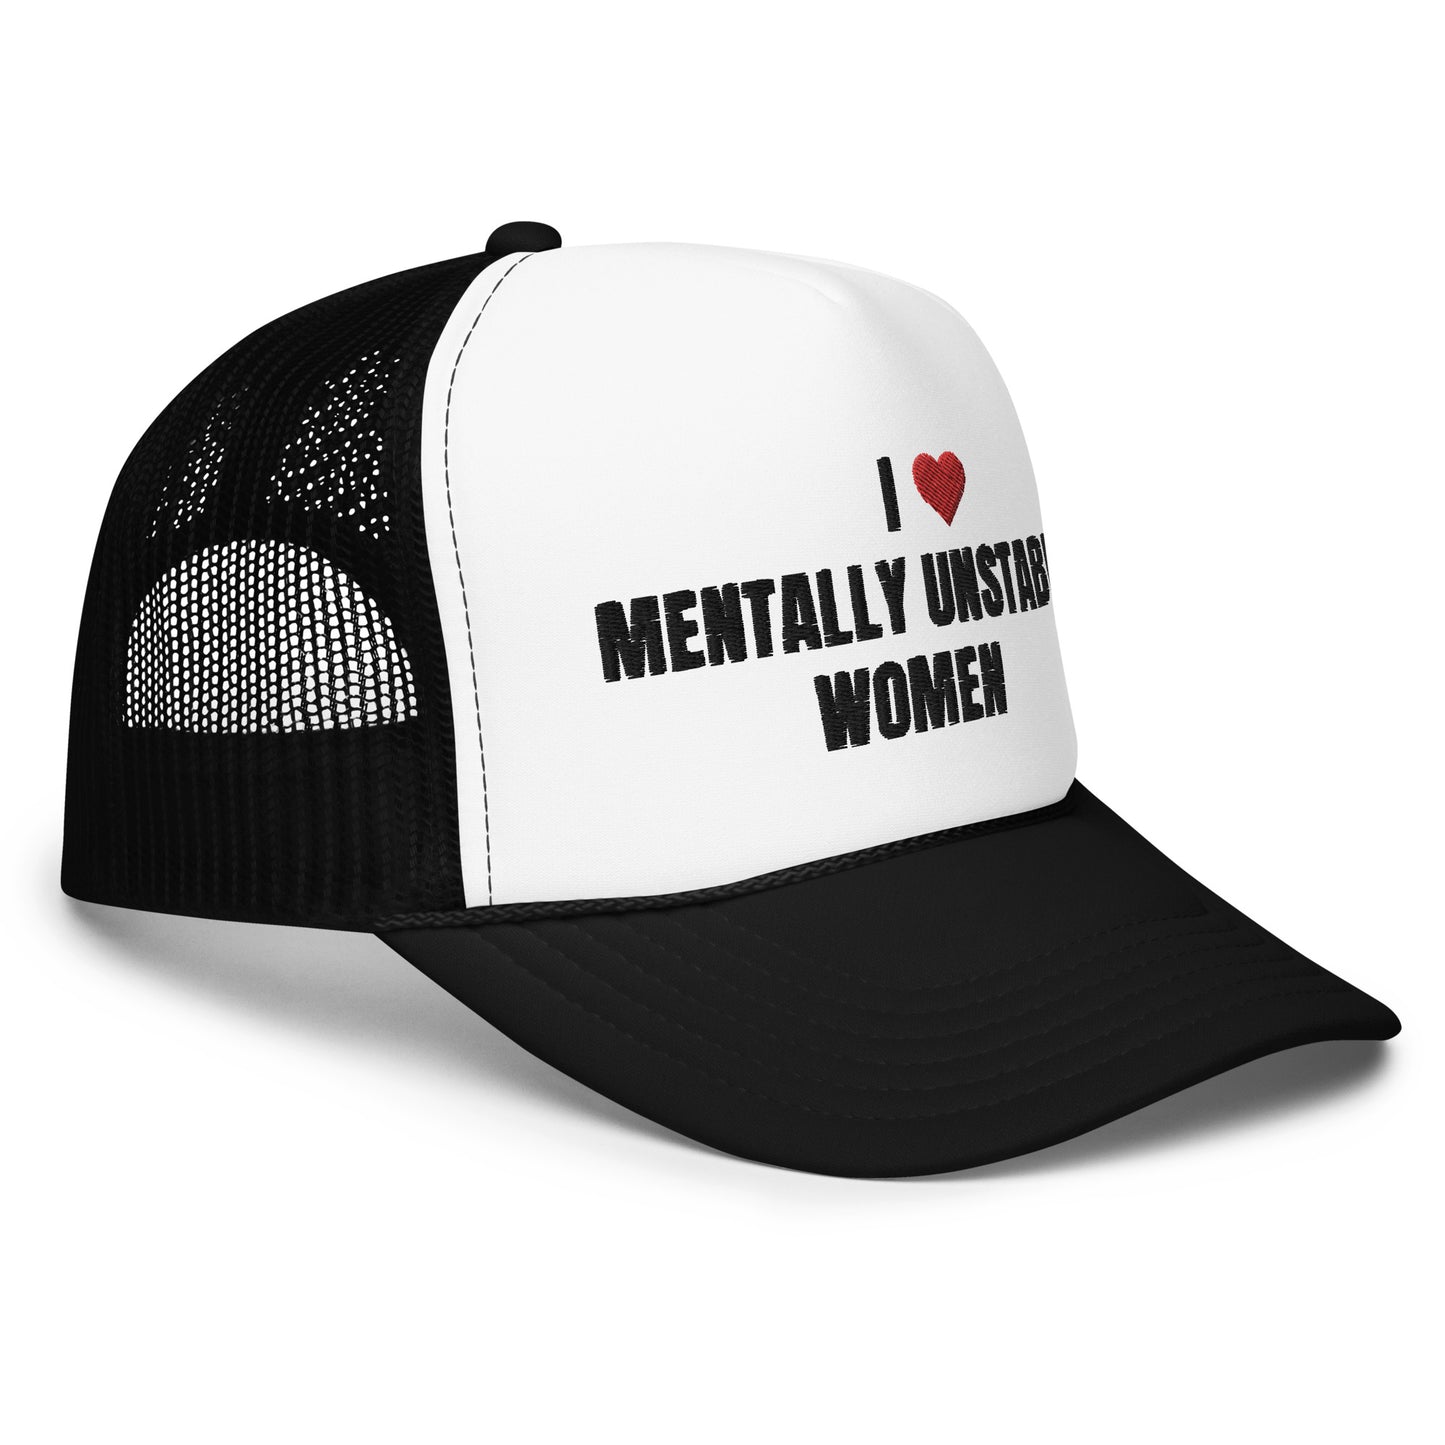 Mentally Unstable Women Foam Trucker Hat